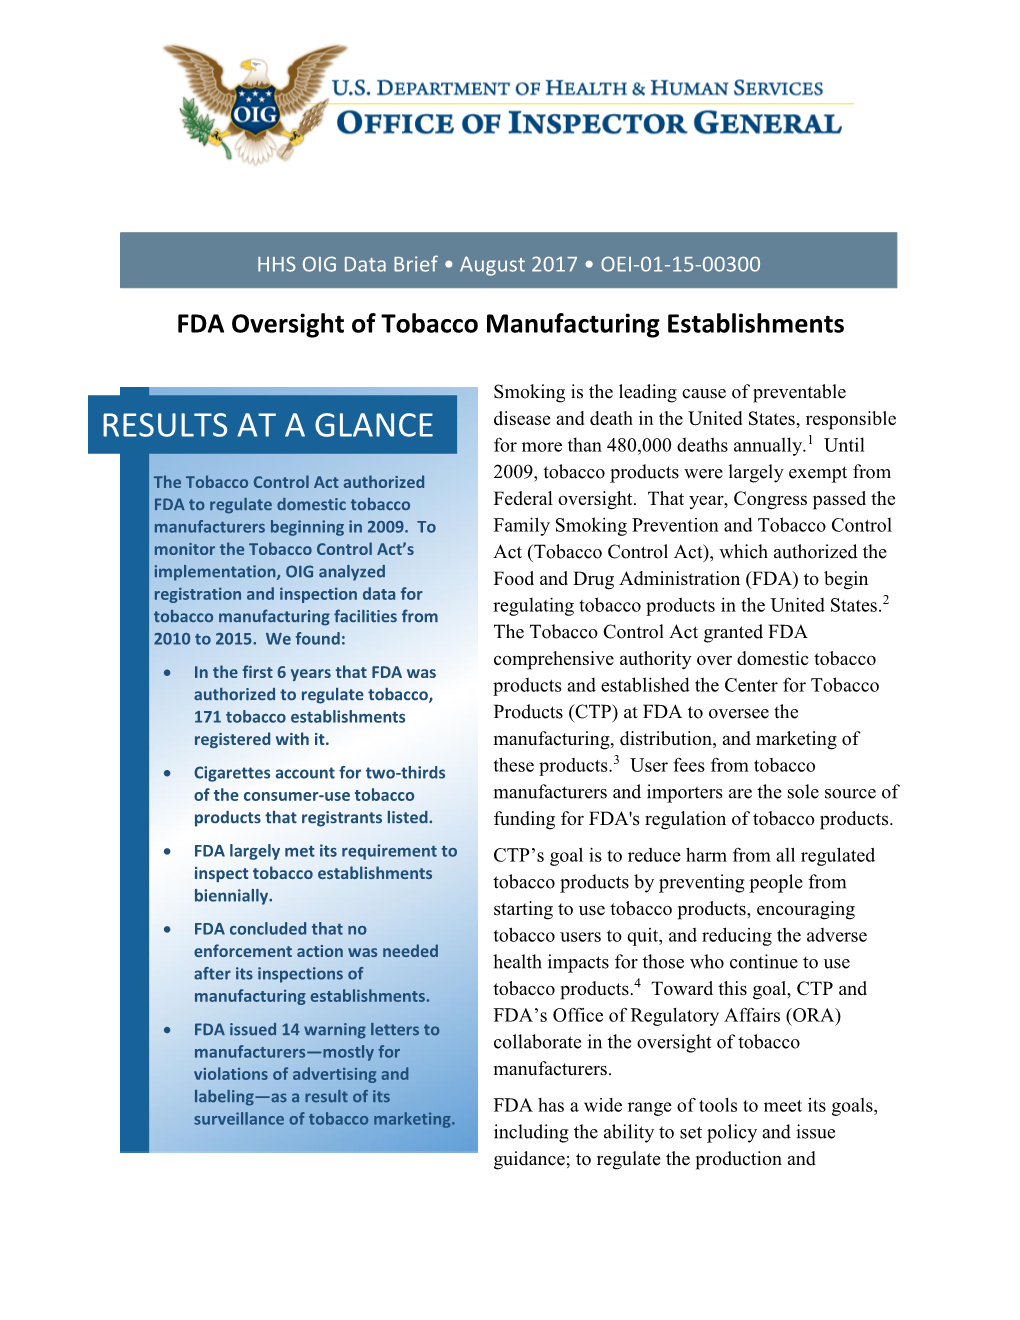 FDA Oversight of Tobacco Manufacturing Establishments (OEI